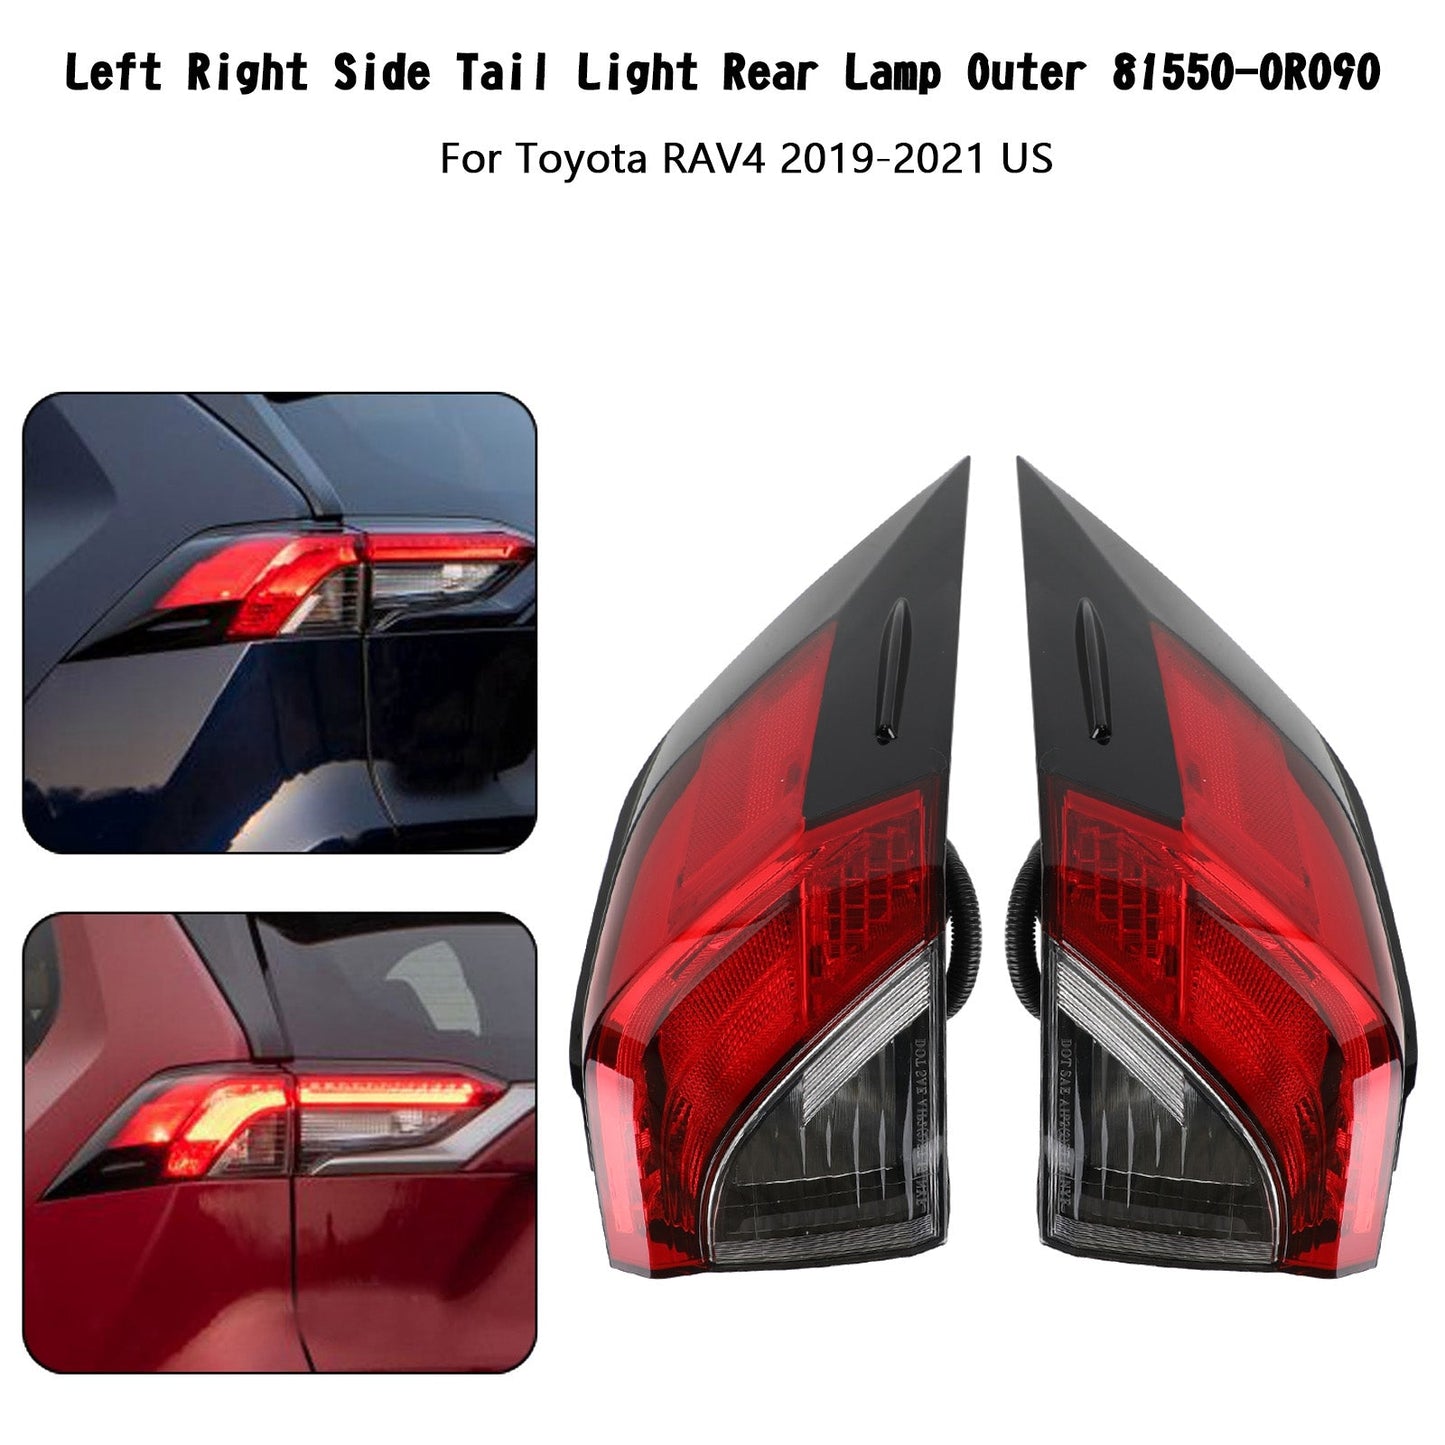 2019-2021 Toyota RAV4 Tail Light Rear Lamp Outer 81560/81550-0R090 L+R Side